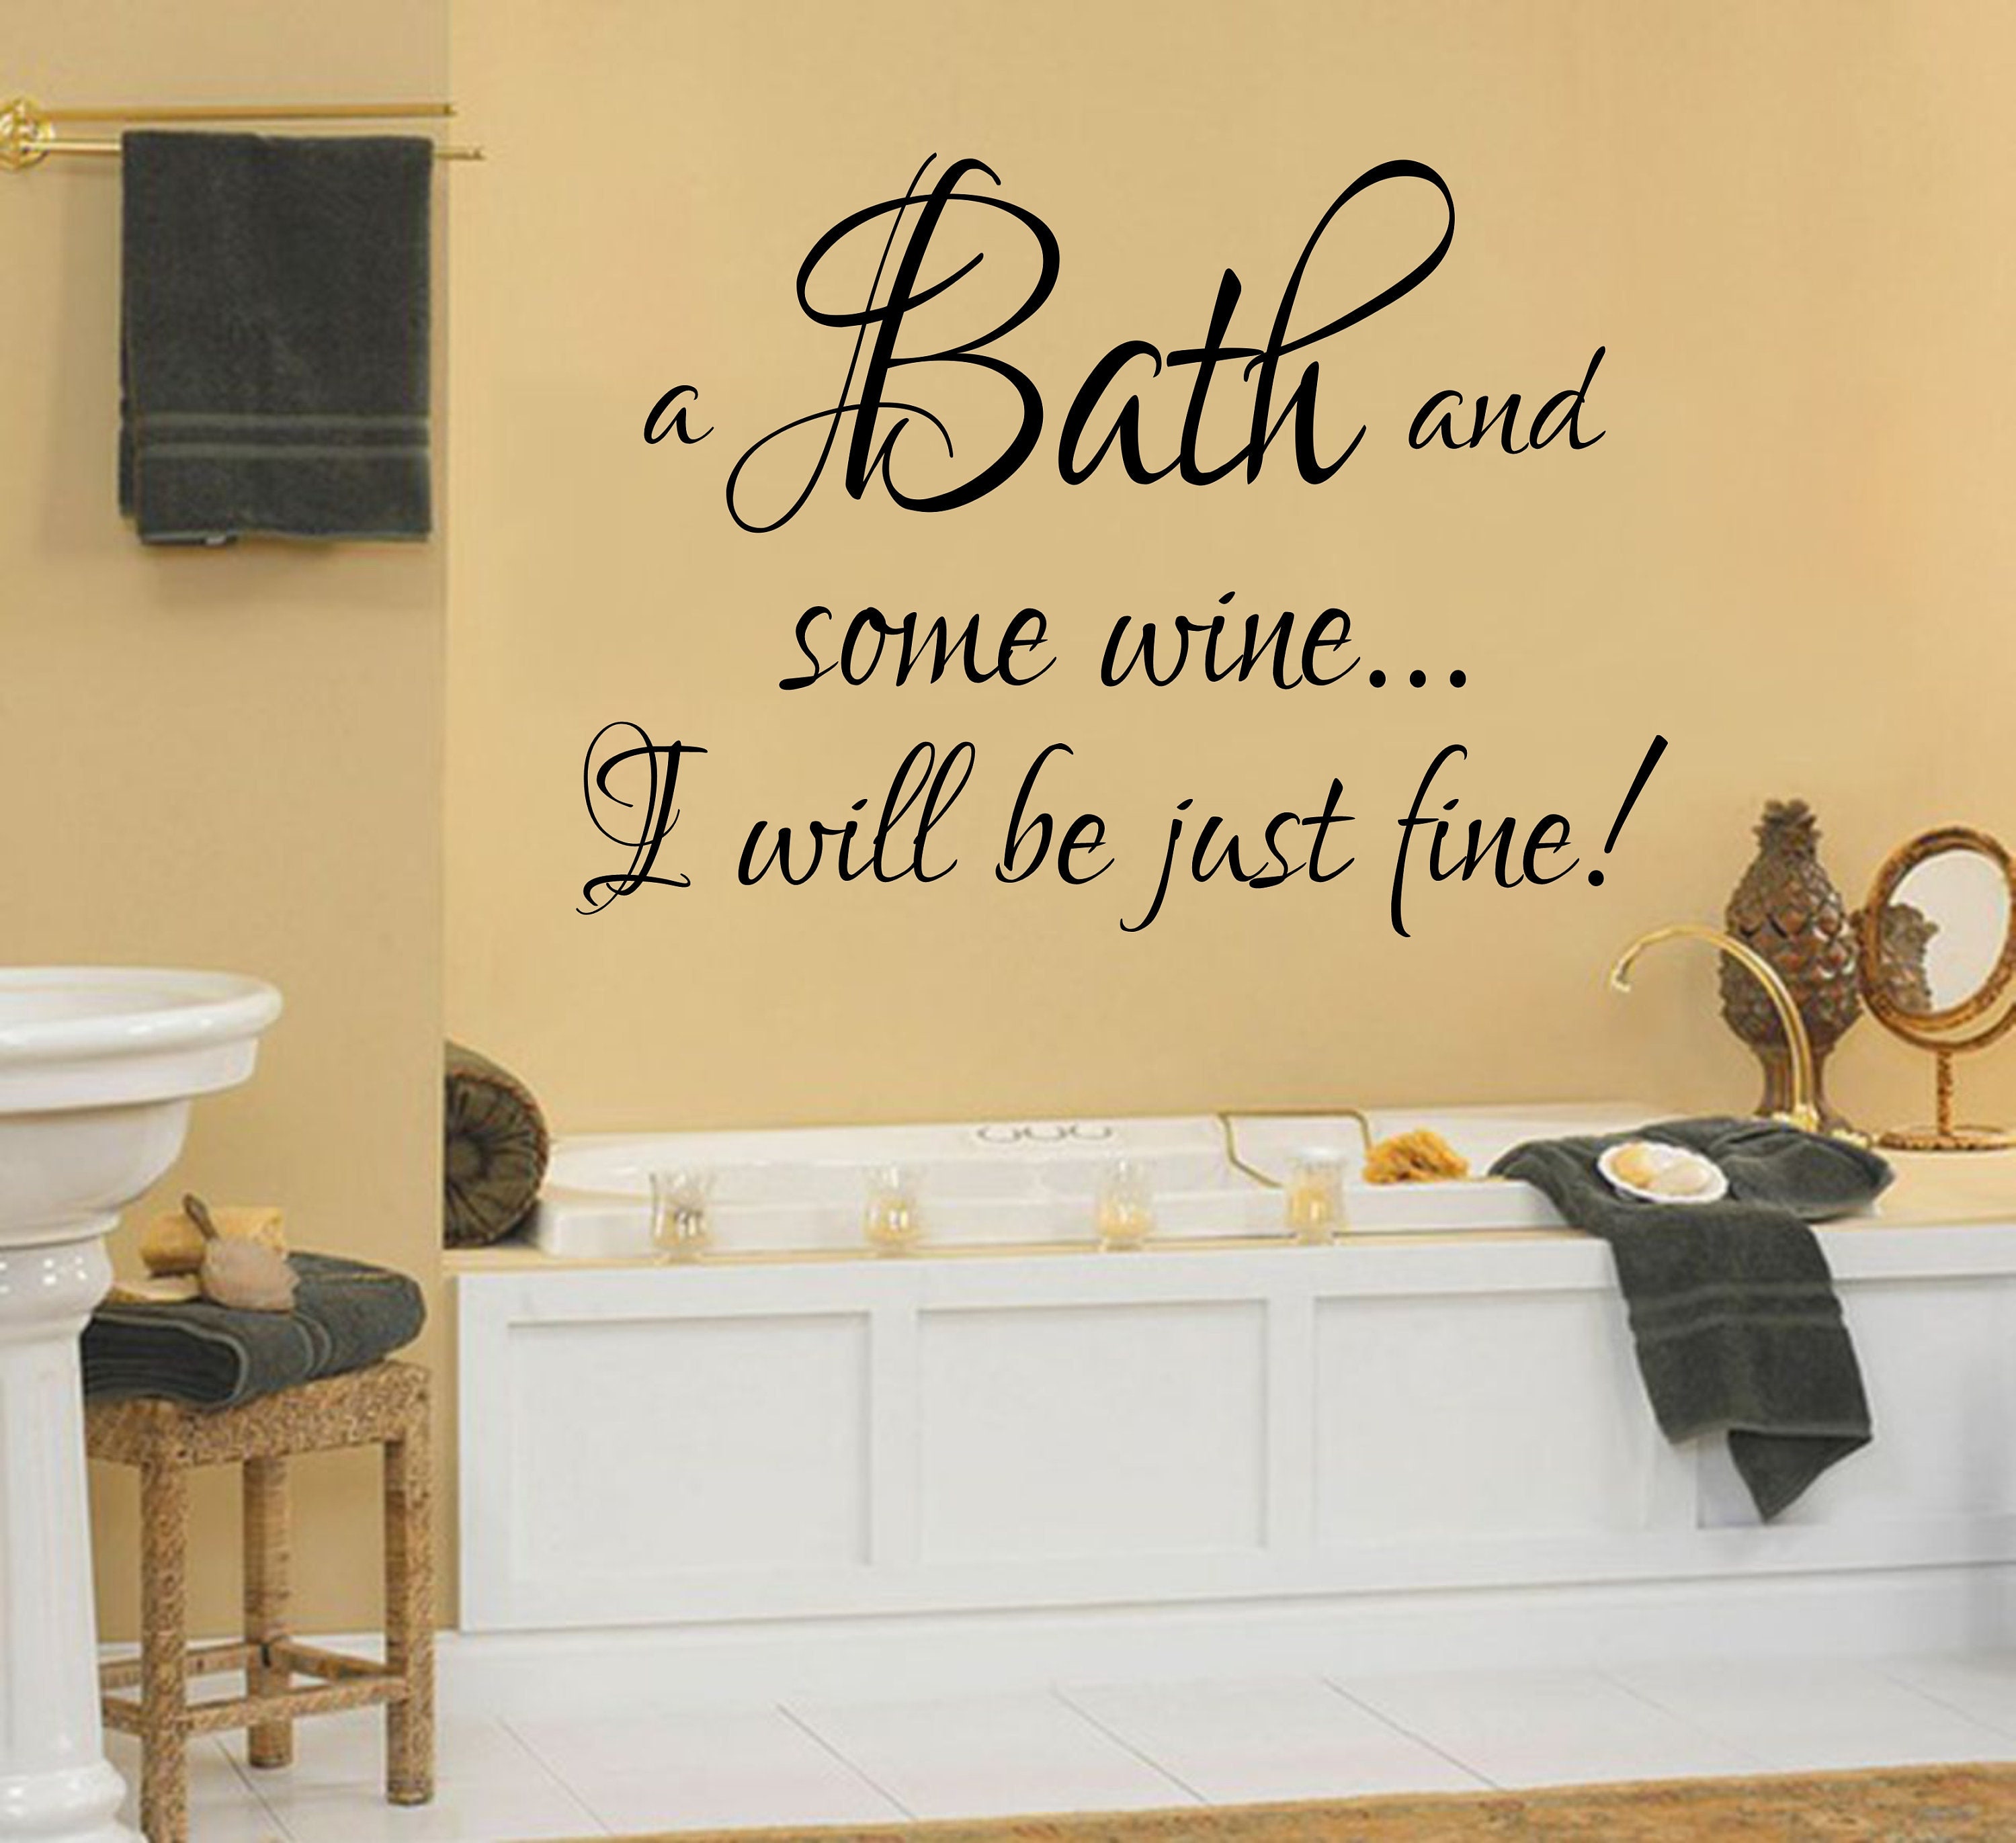 Bathroom wall sticker decal take a bath daily scrub quote art funny 